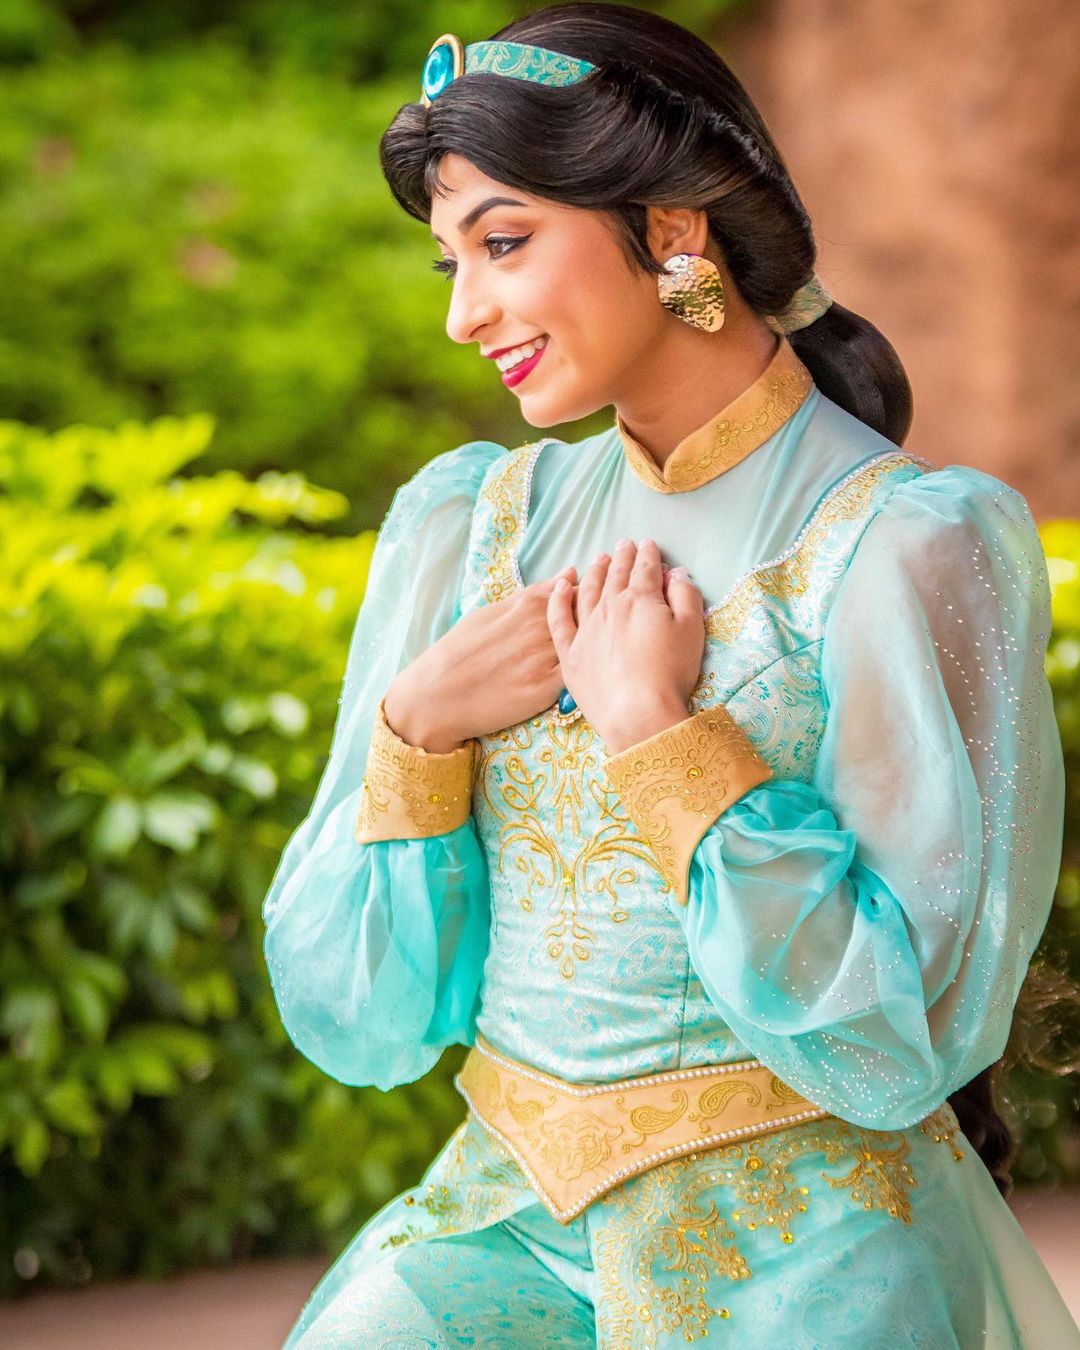 Princesa Jasmine no Pavilhão do Marrocos no Epcot para Foto